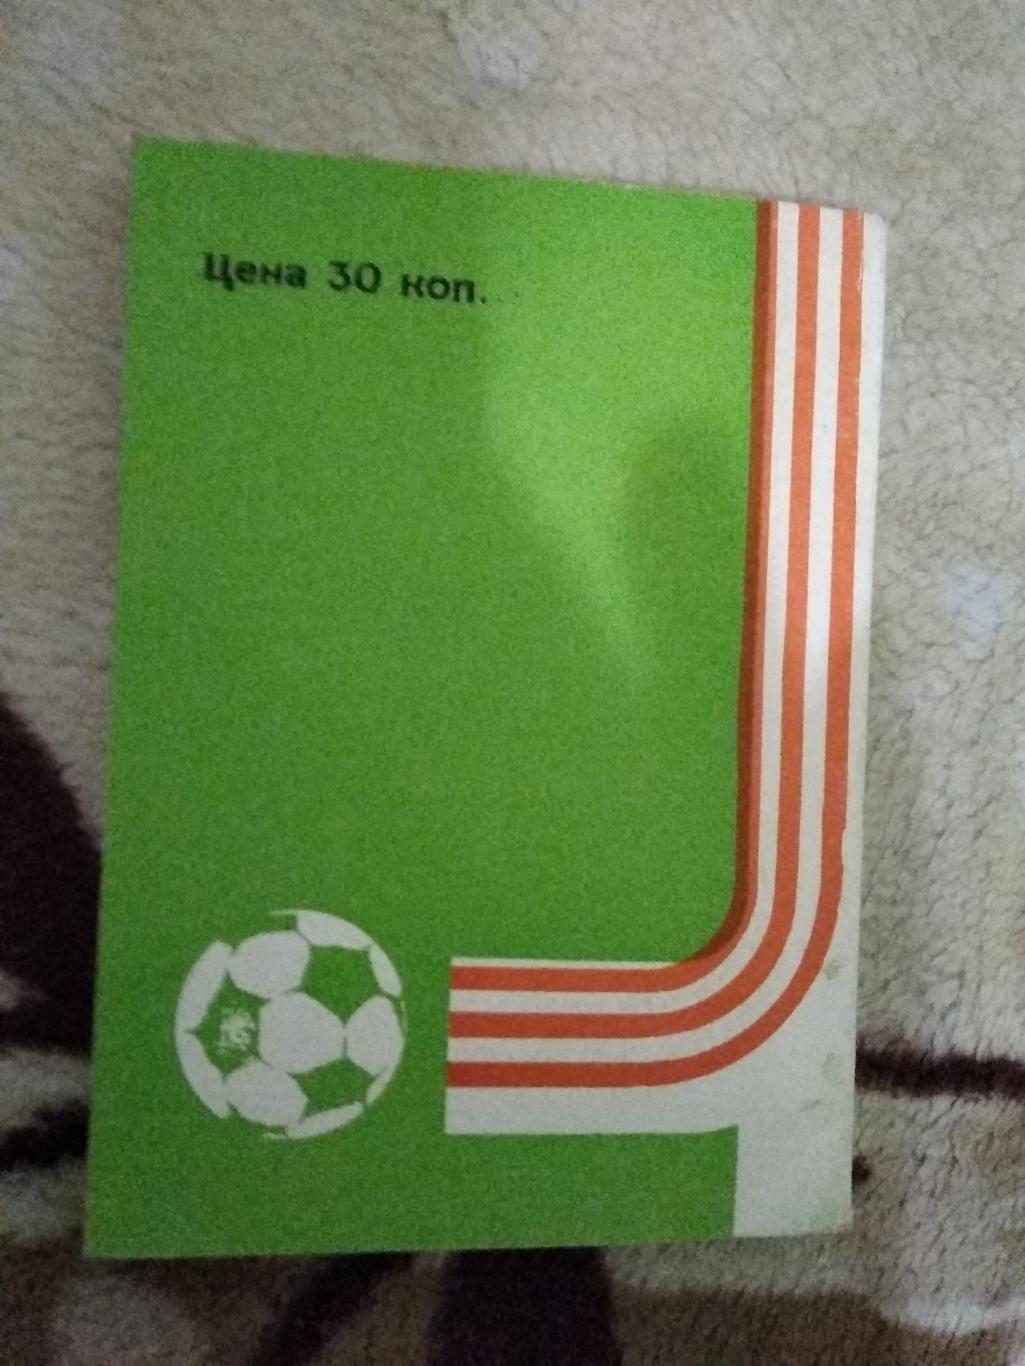 Футбол.Воронеж 1980 г. 1